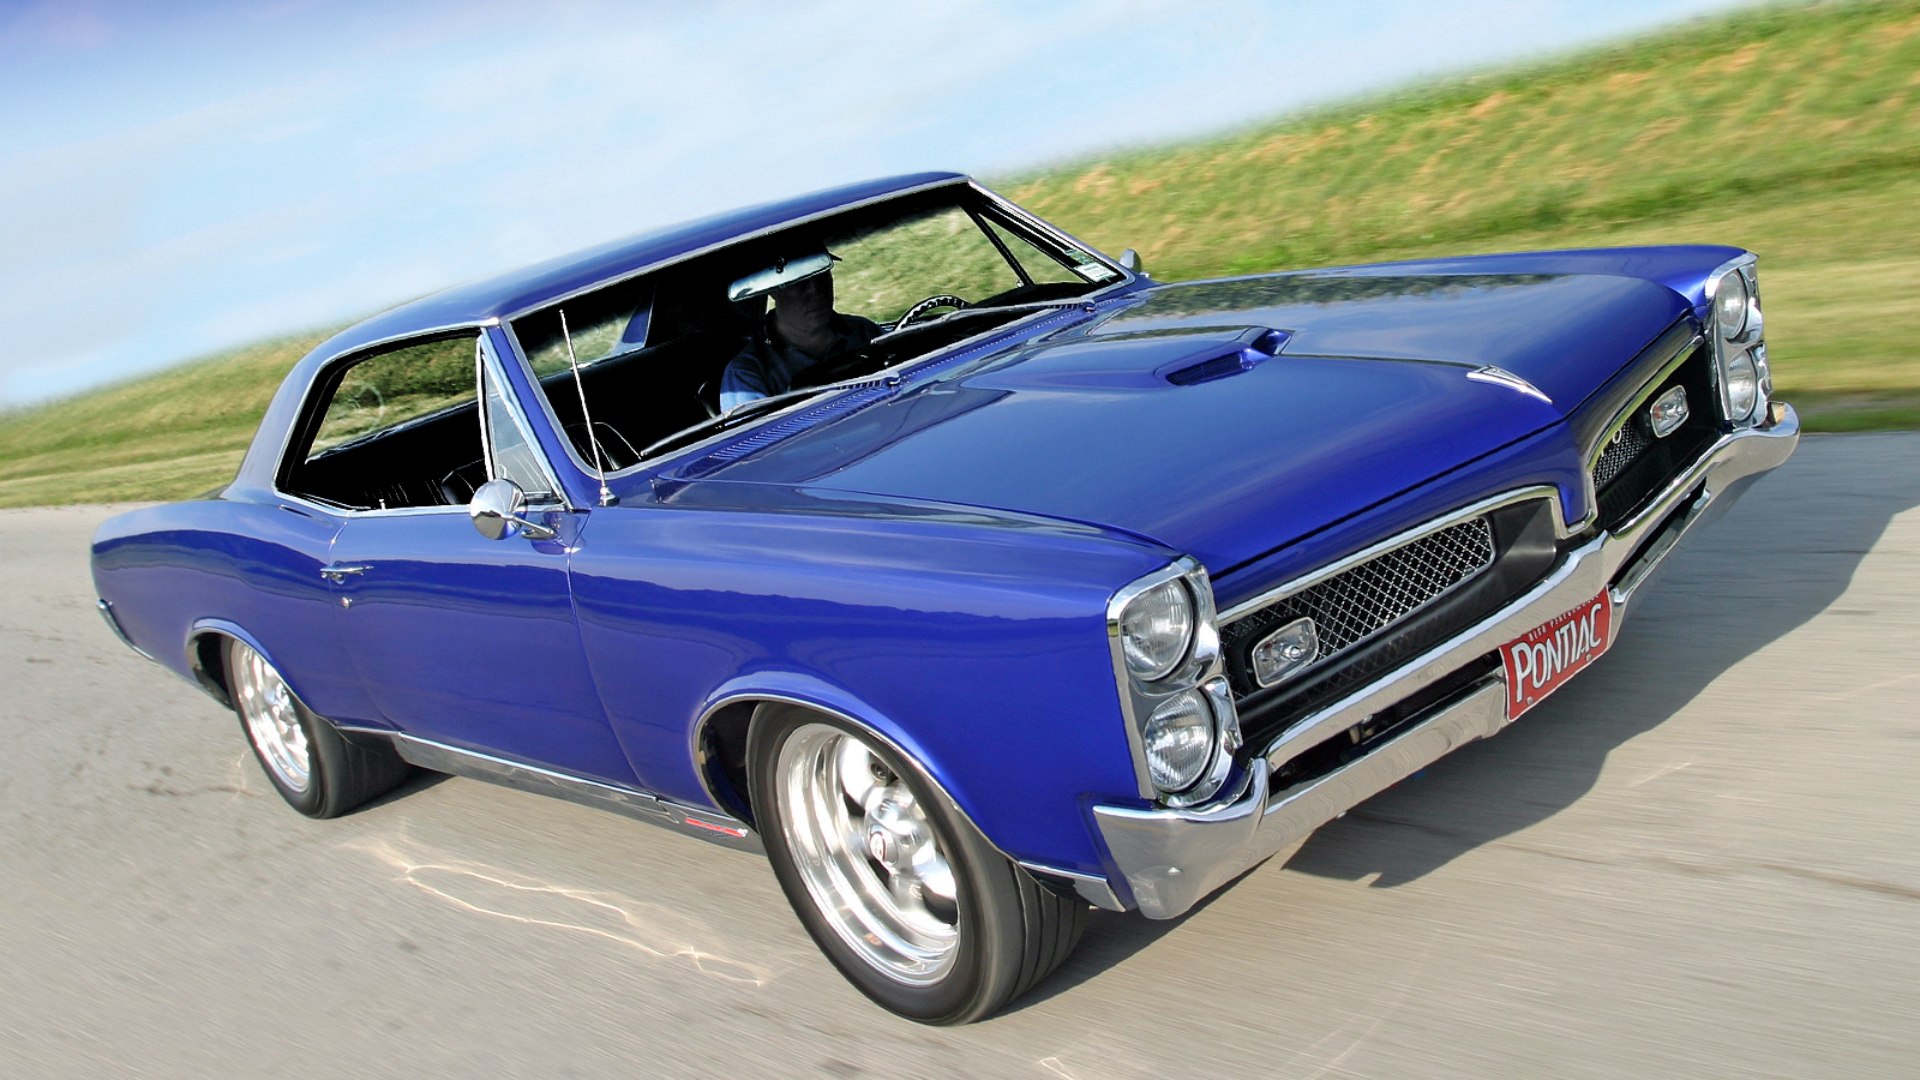 Синий Pontiac GTO разгоняется на прямой дороге с отличной видимостью